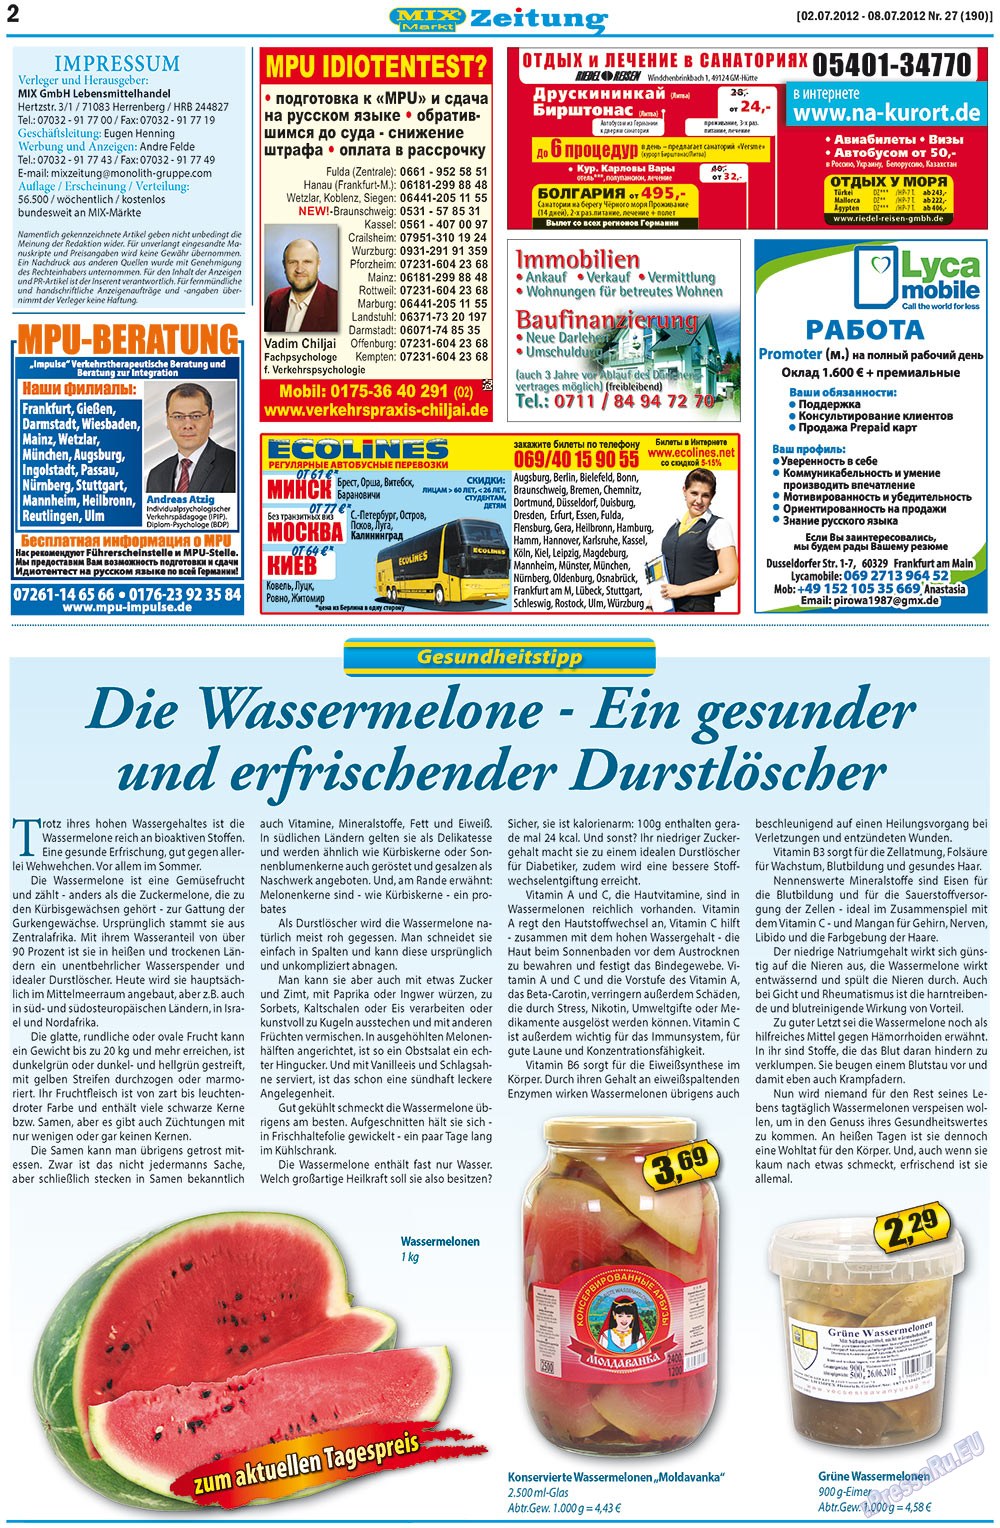 MIX-Markt Zeitung (газета). 2012 год, номер 27, стр. 2